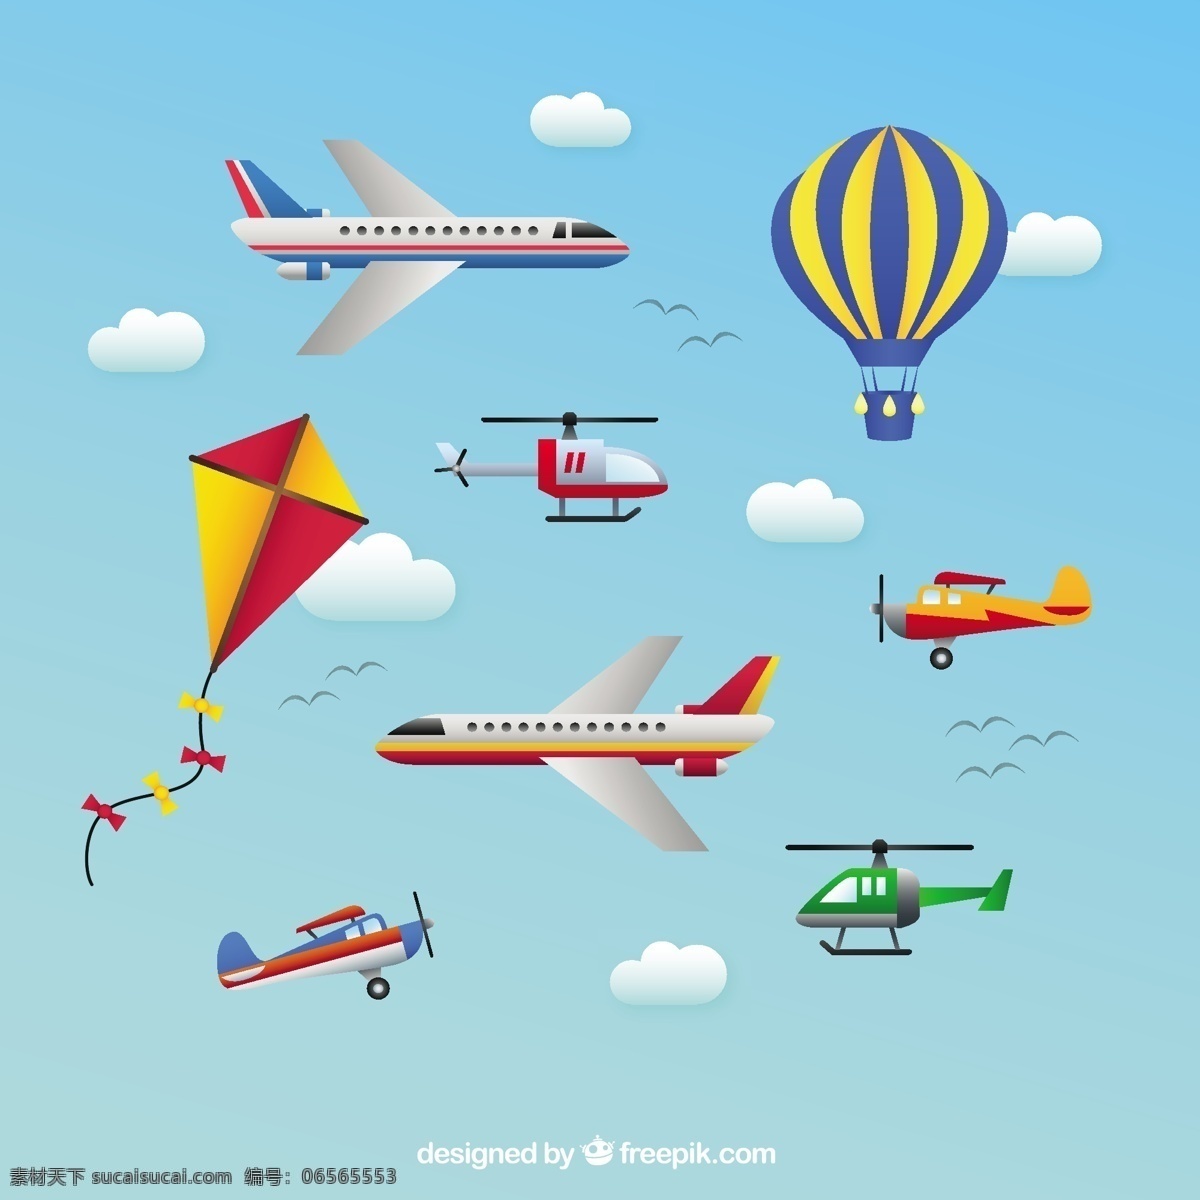 航空运输 图标 飞机 气球 运输 热气球 直升机 航空气球 运输机 青色 天蓝色